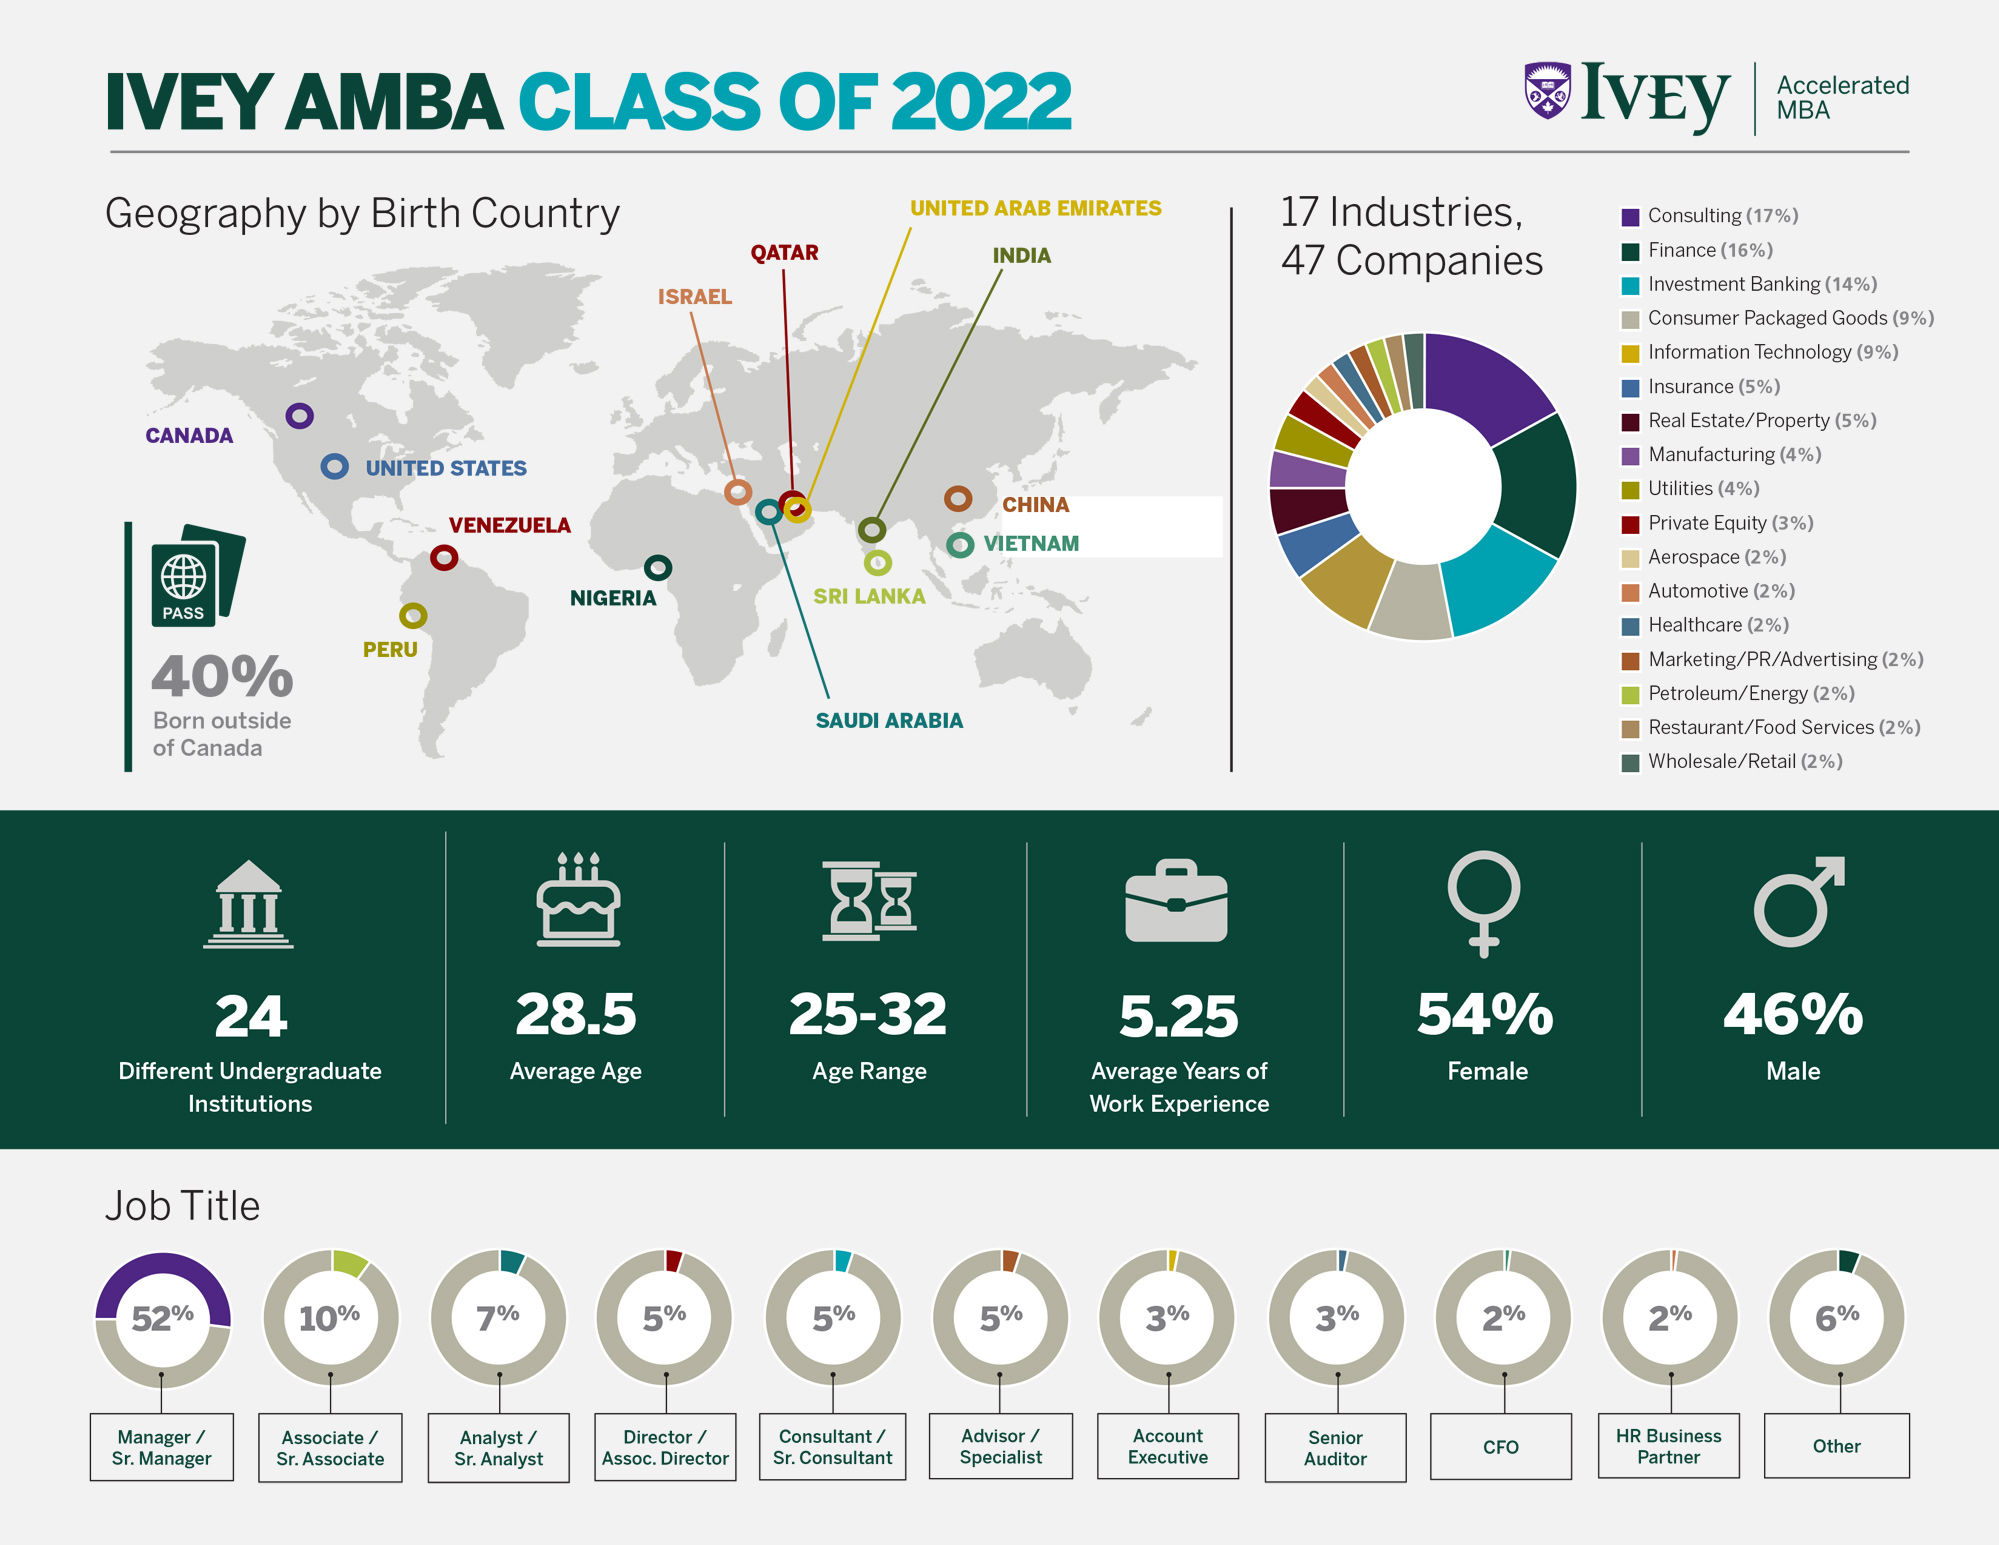 AMBA Class Stats 2022